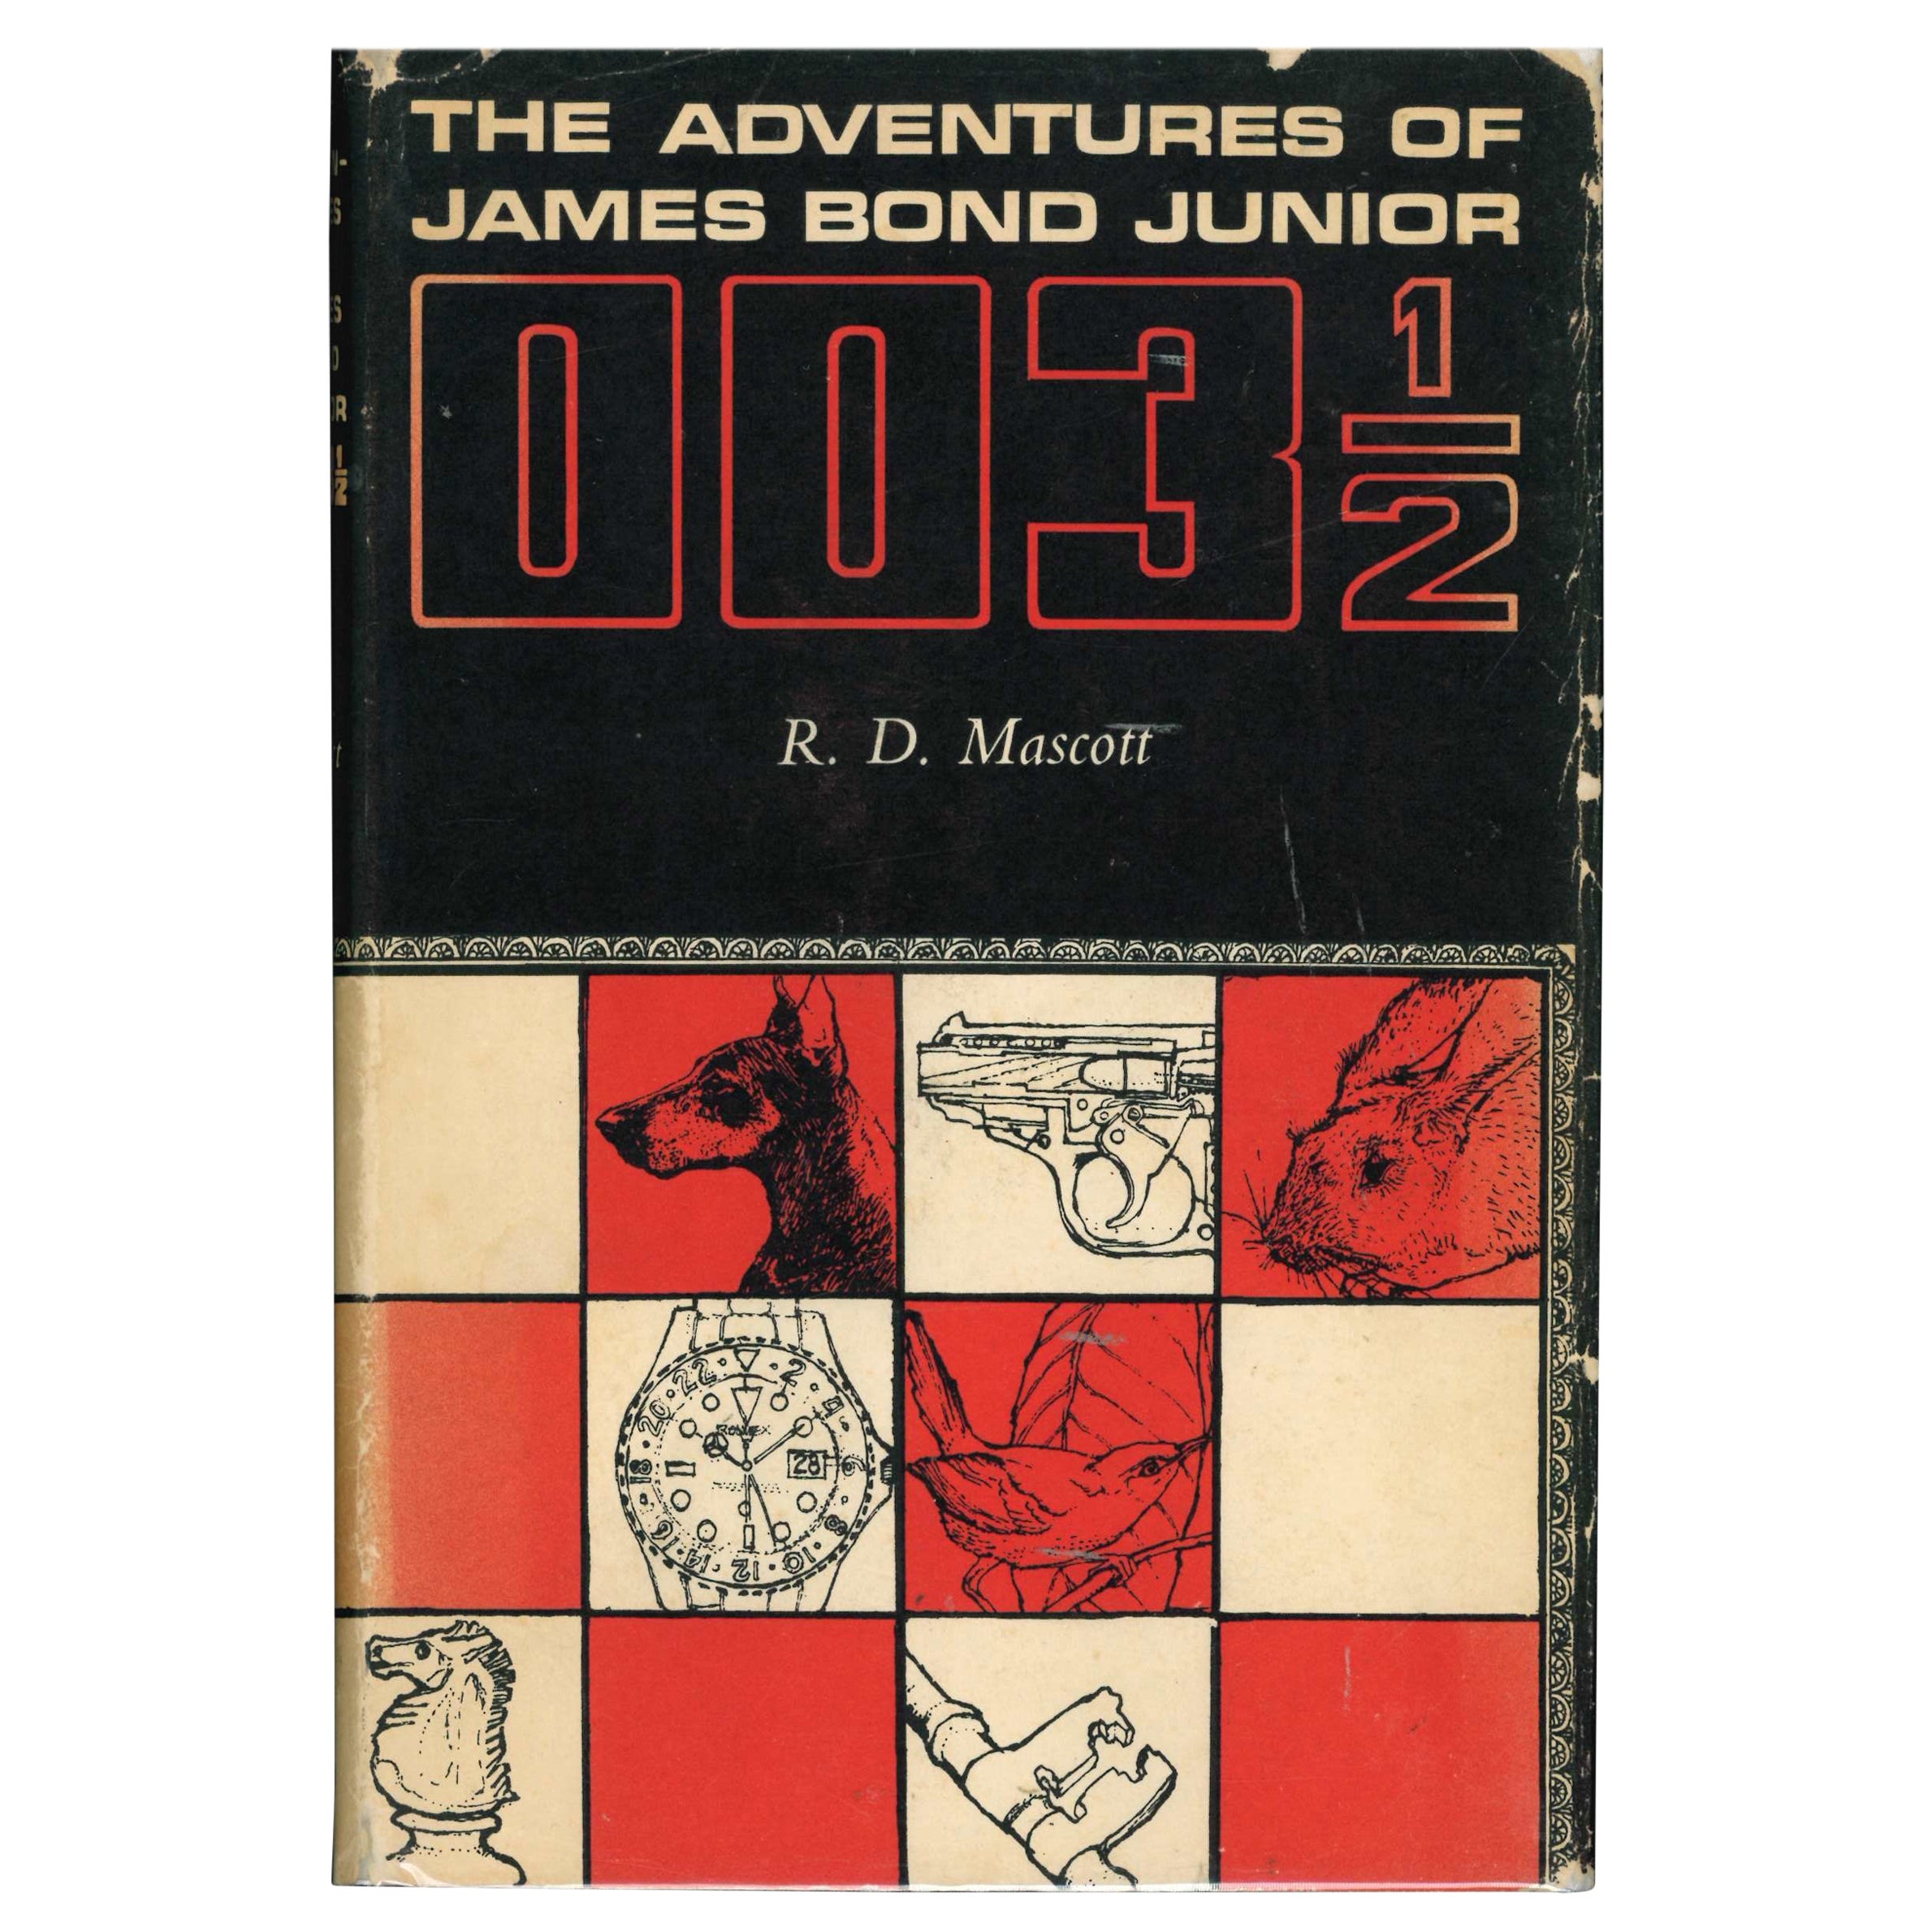 Les aventures de James Bond Junior 003 1/2 par R. D. Mascott (livre)